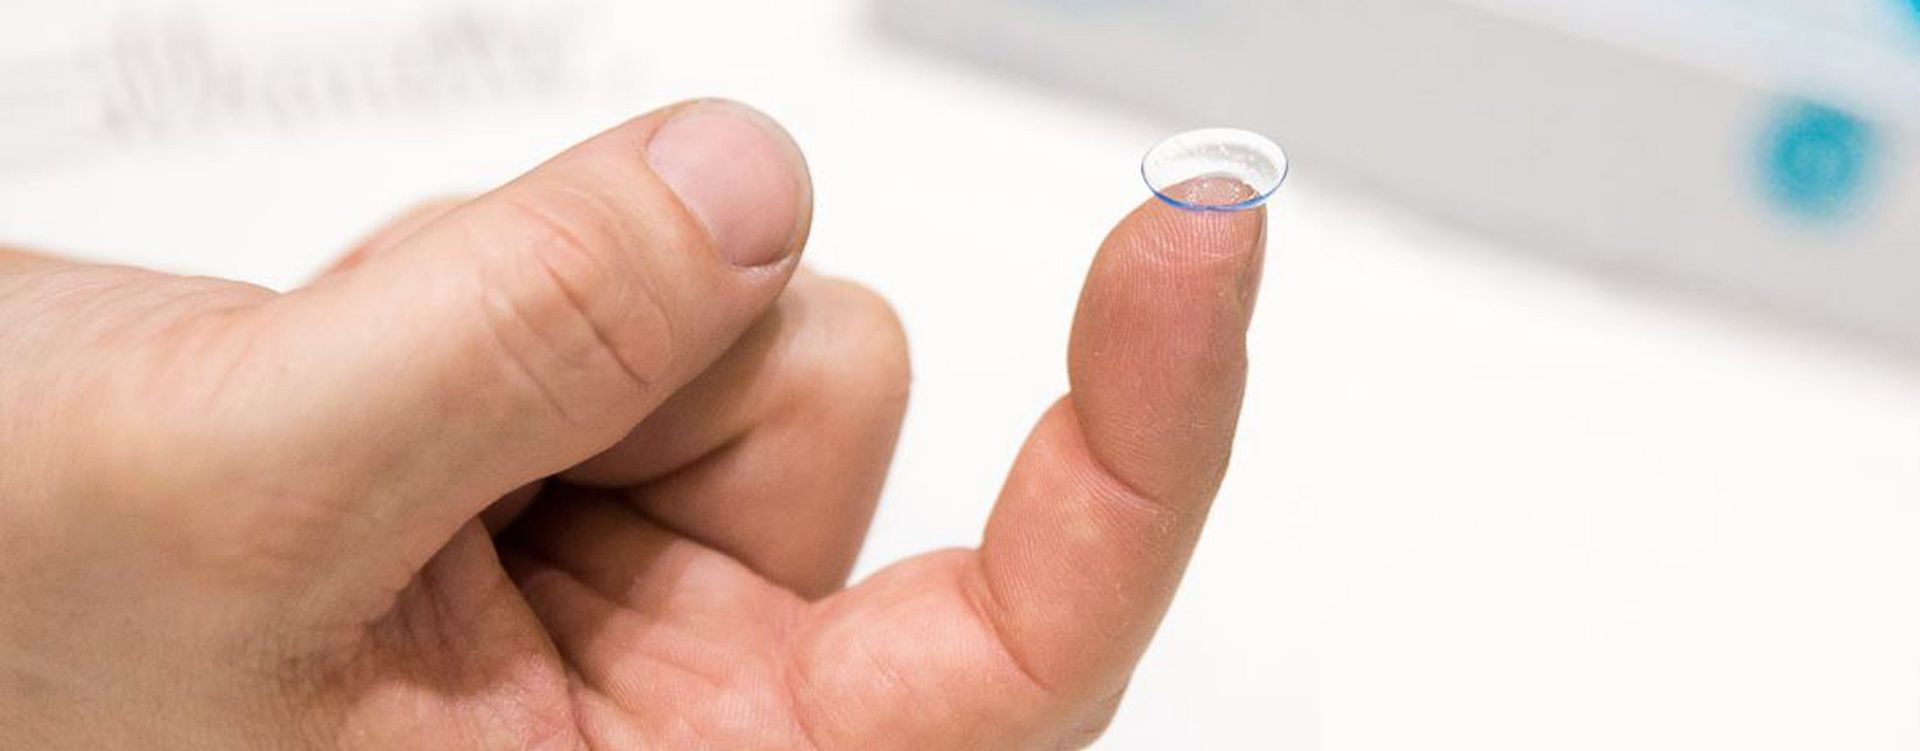 Kontaktlinse auf einer Fingerspitze